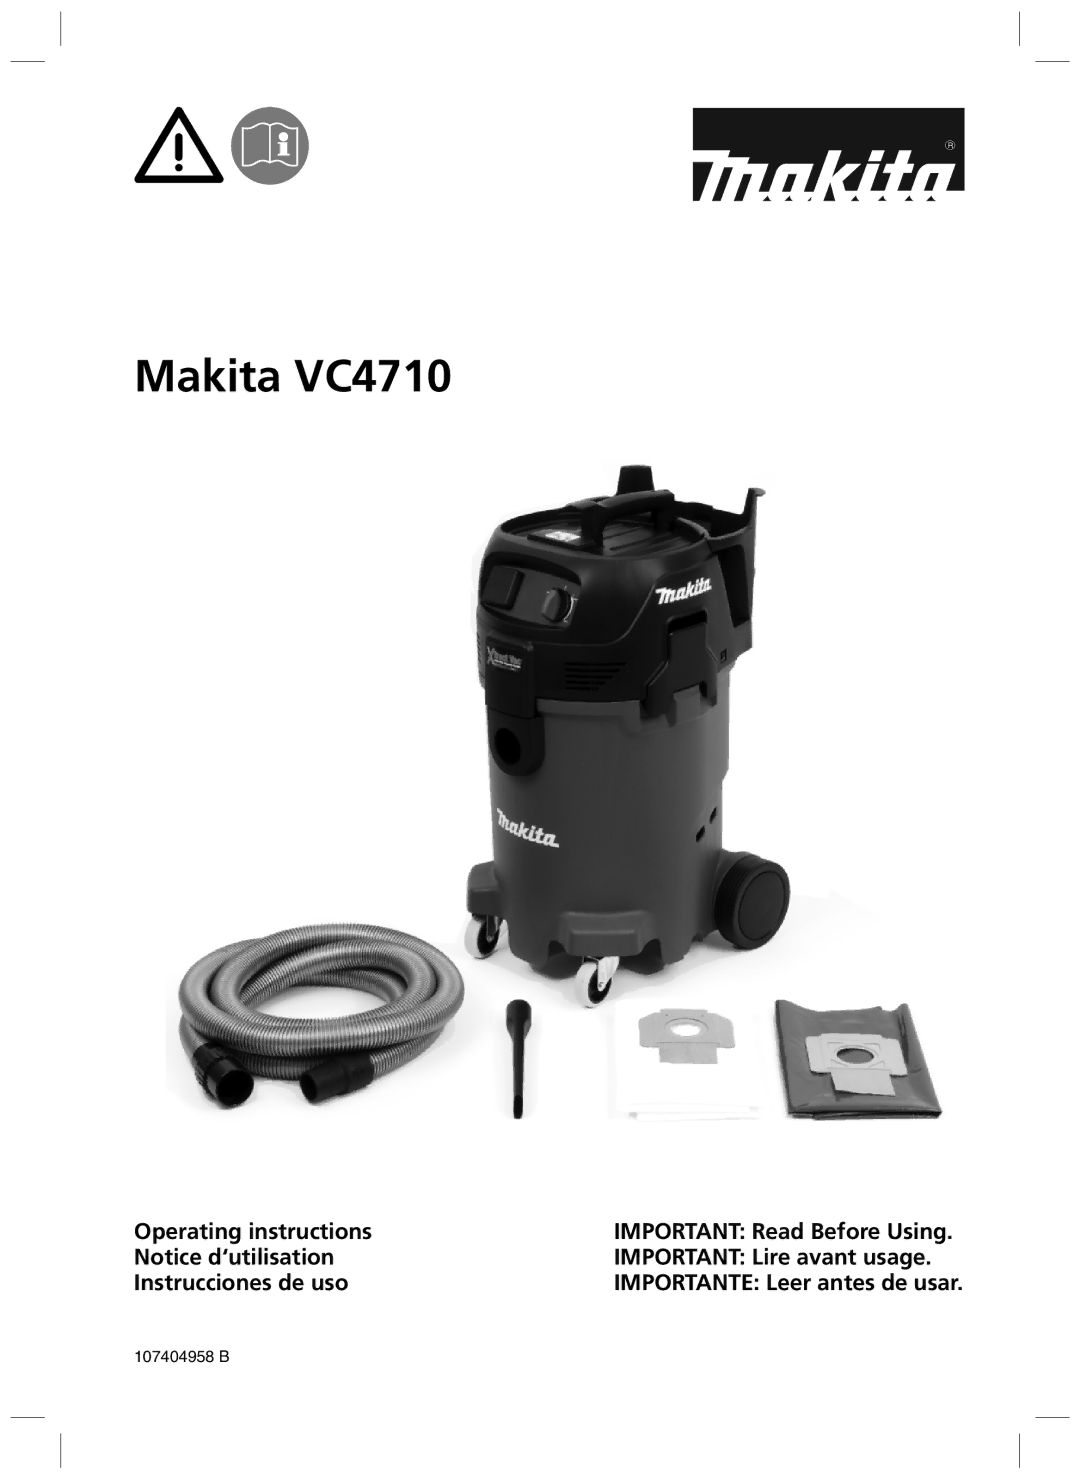 Makita manual Makita VC4710, 107404958 B 